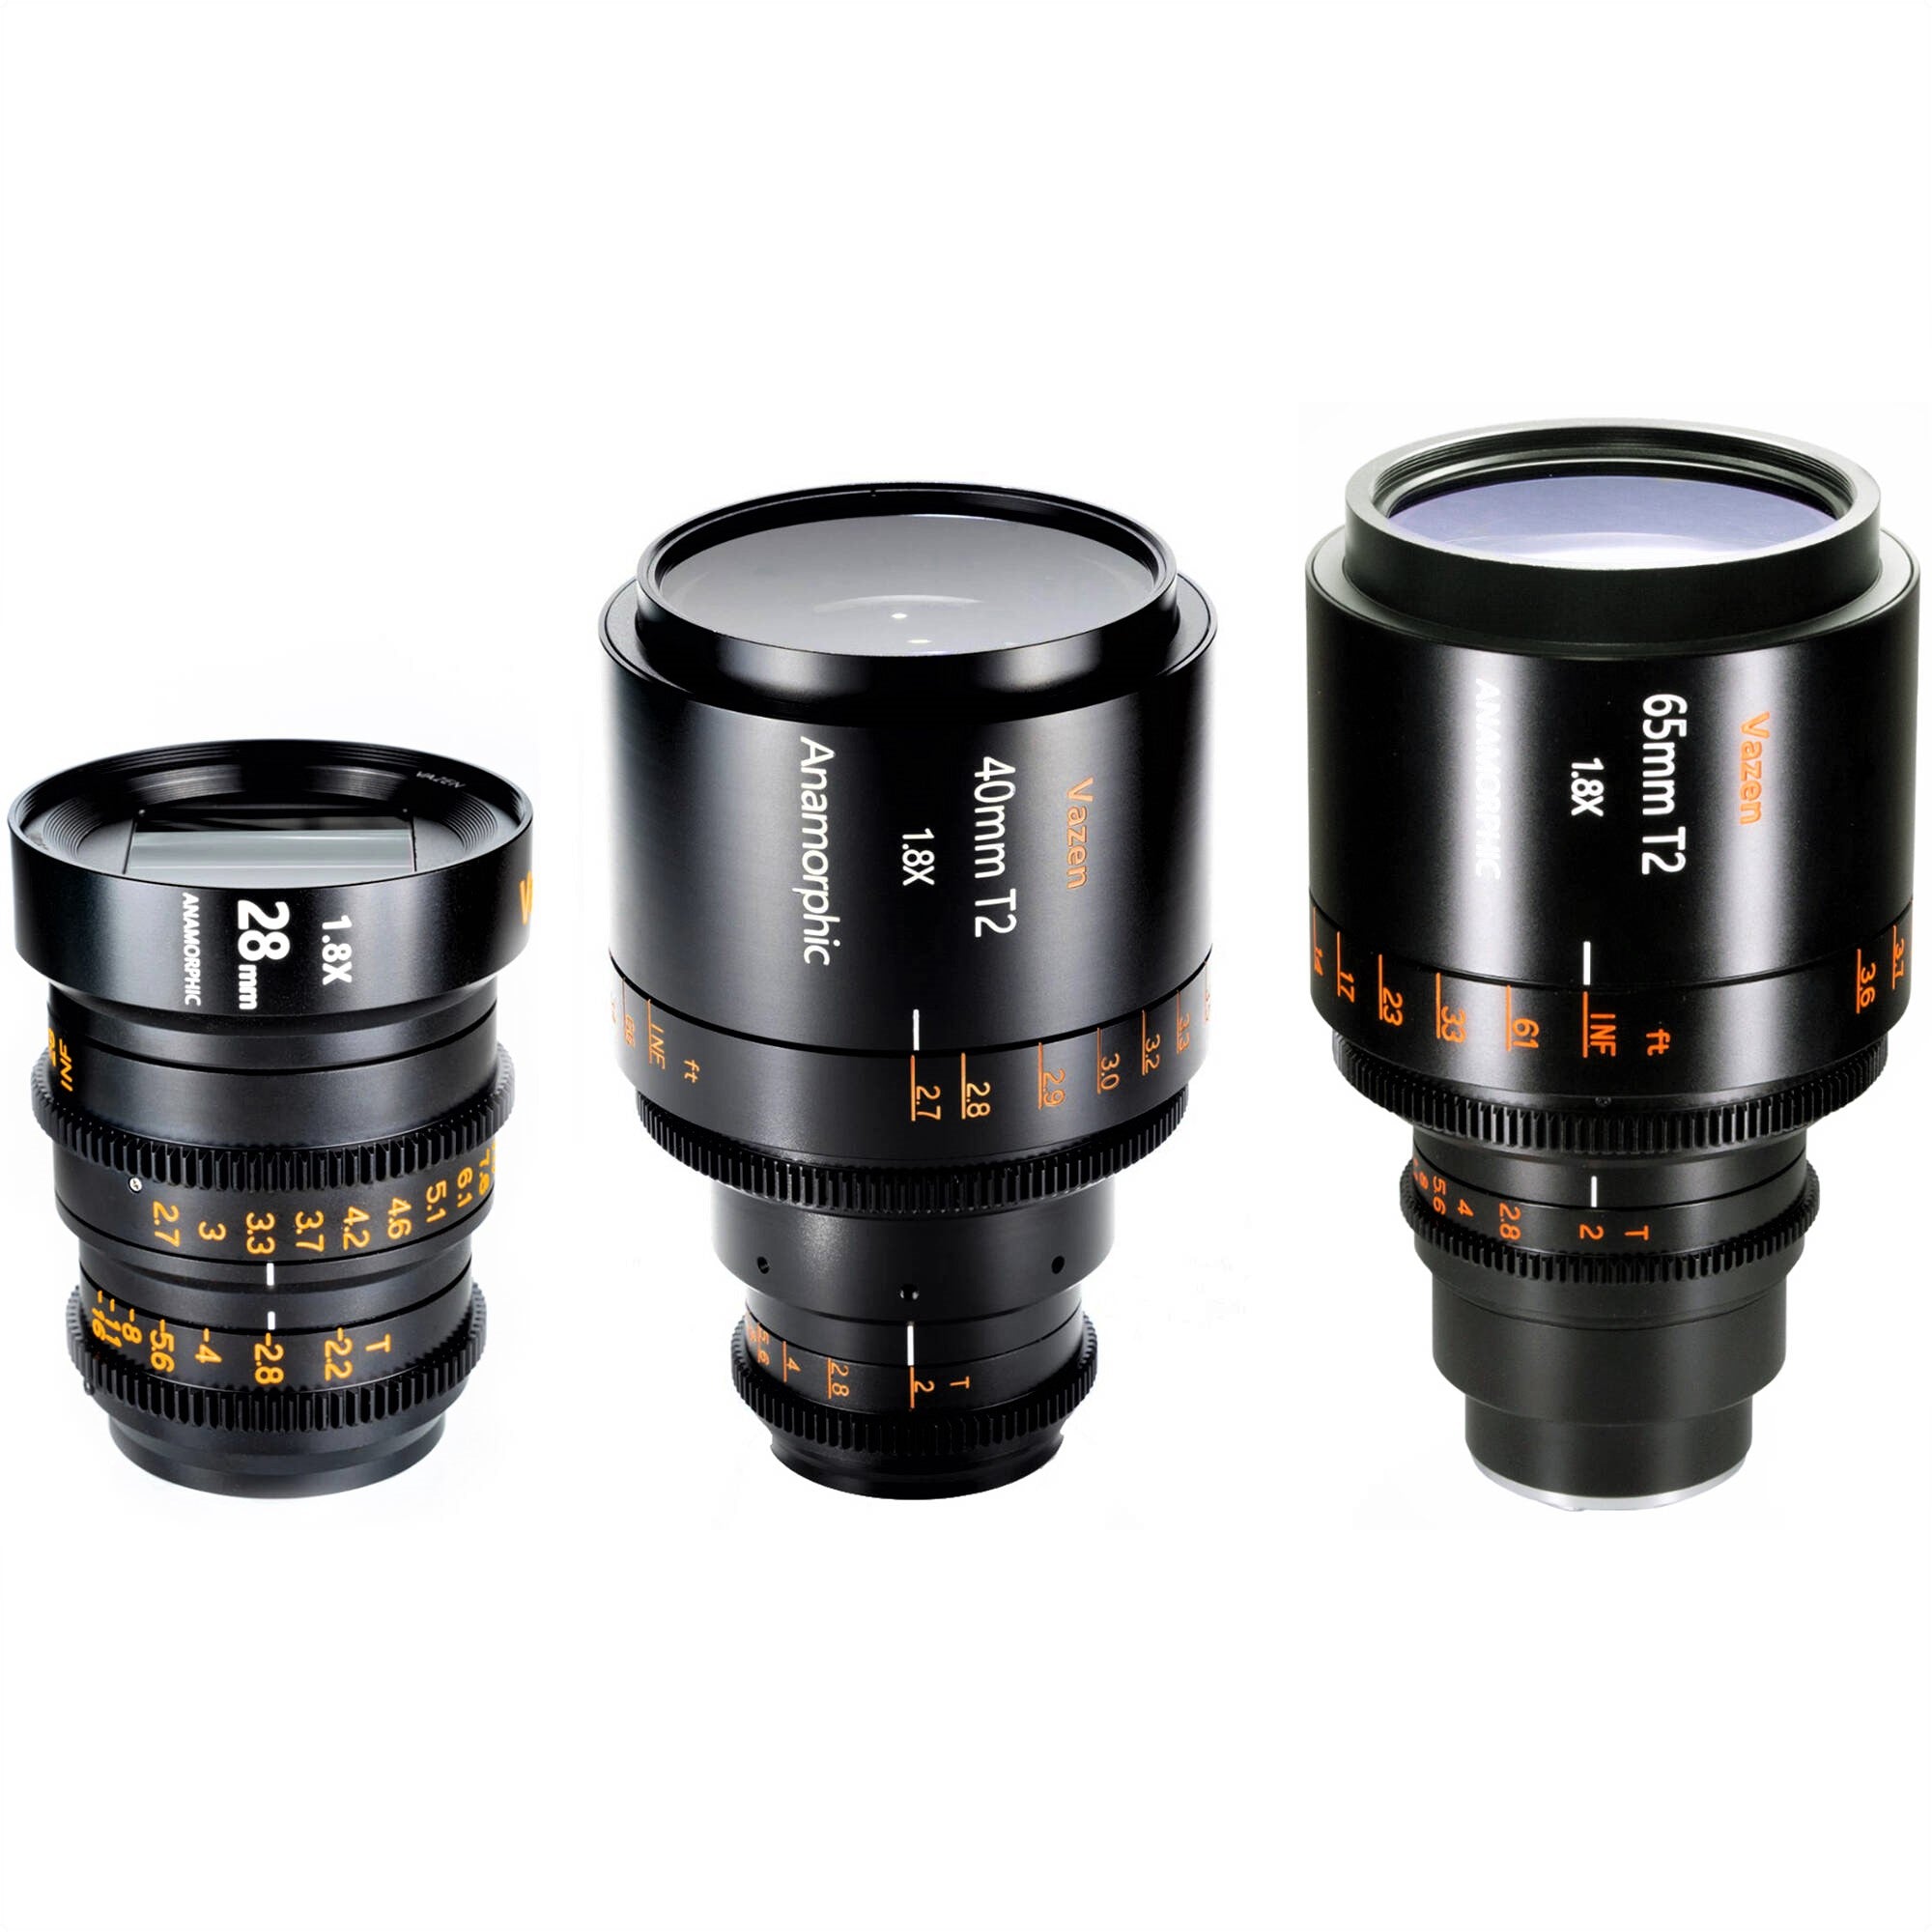 Vazen 28mm T2.2 1.8x Anamorphic Lens (Left Side), Vazen 40mm T2 1.8x Anamorphic Lens (Middle), and Vazen 65mm T2 1.8x Anamorphic Lens (Right Side)